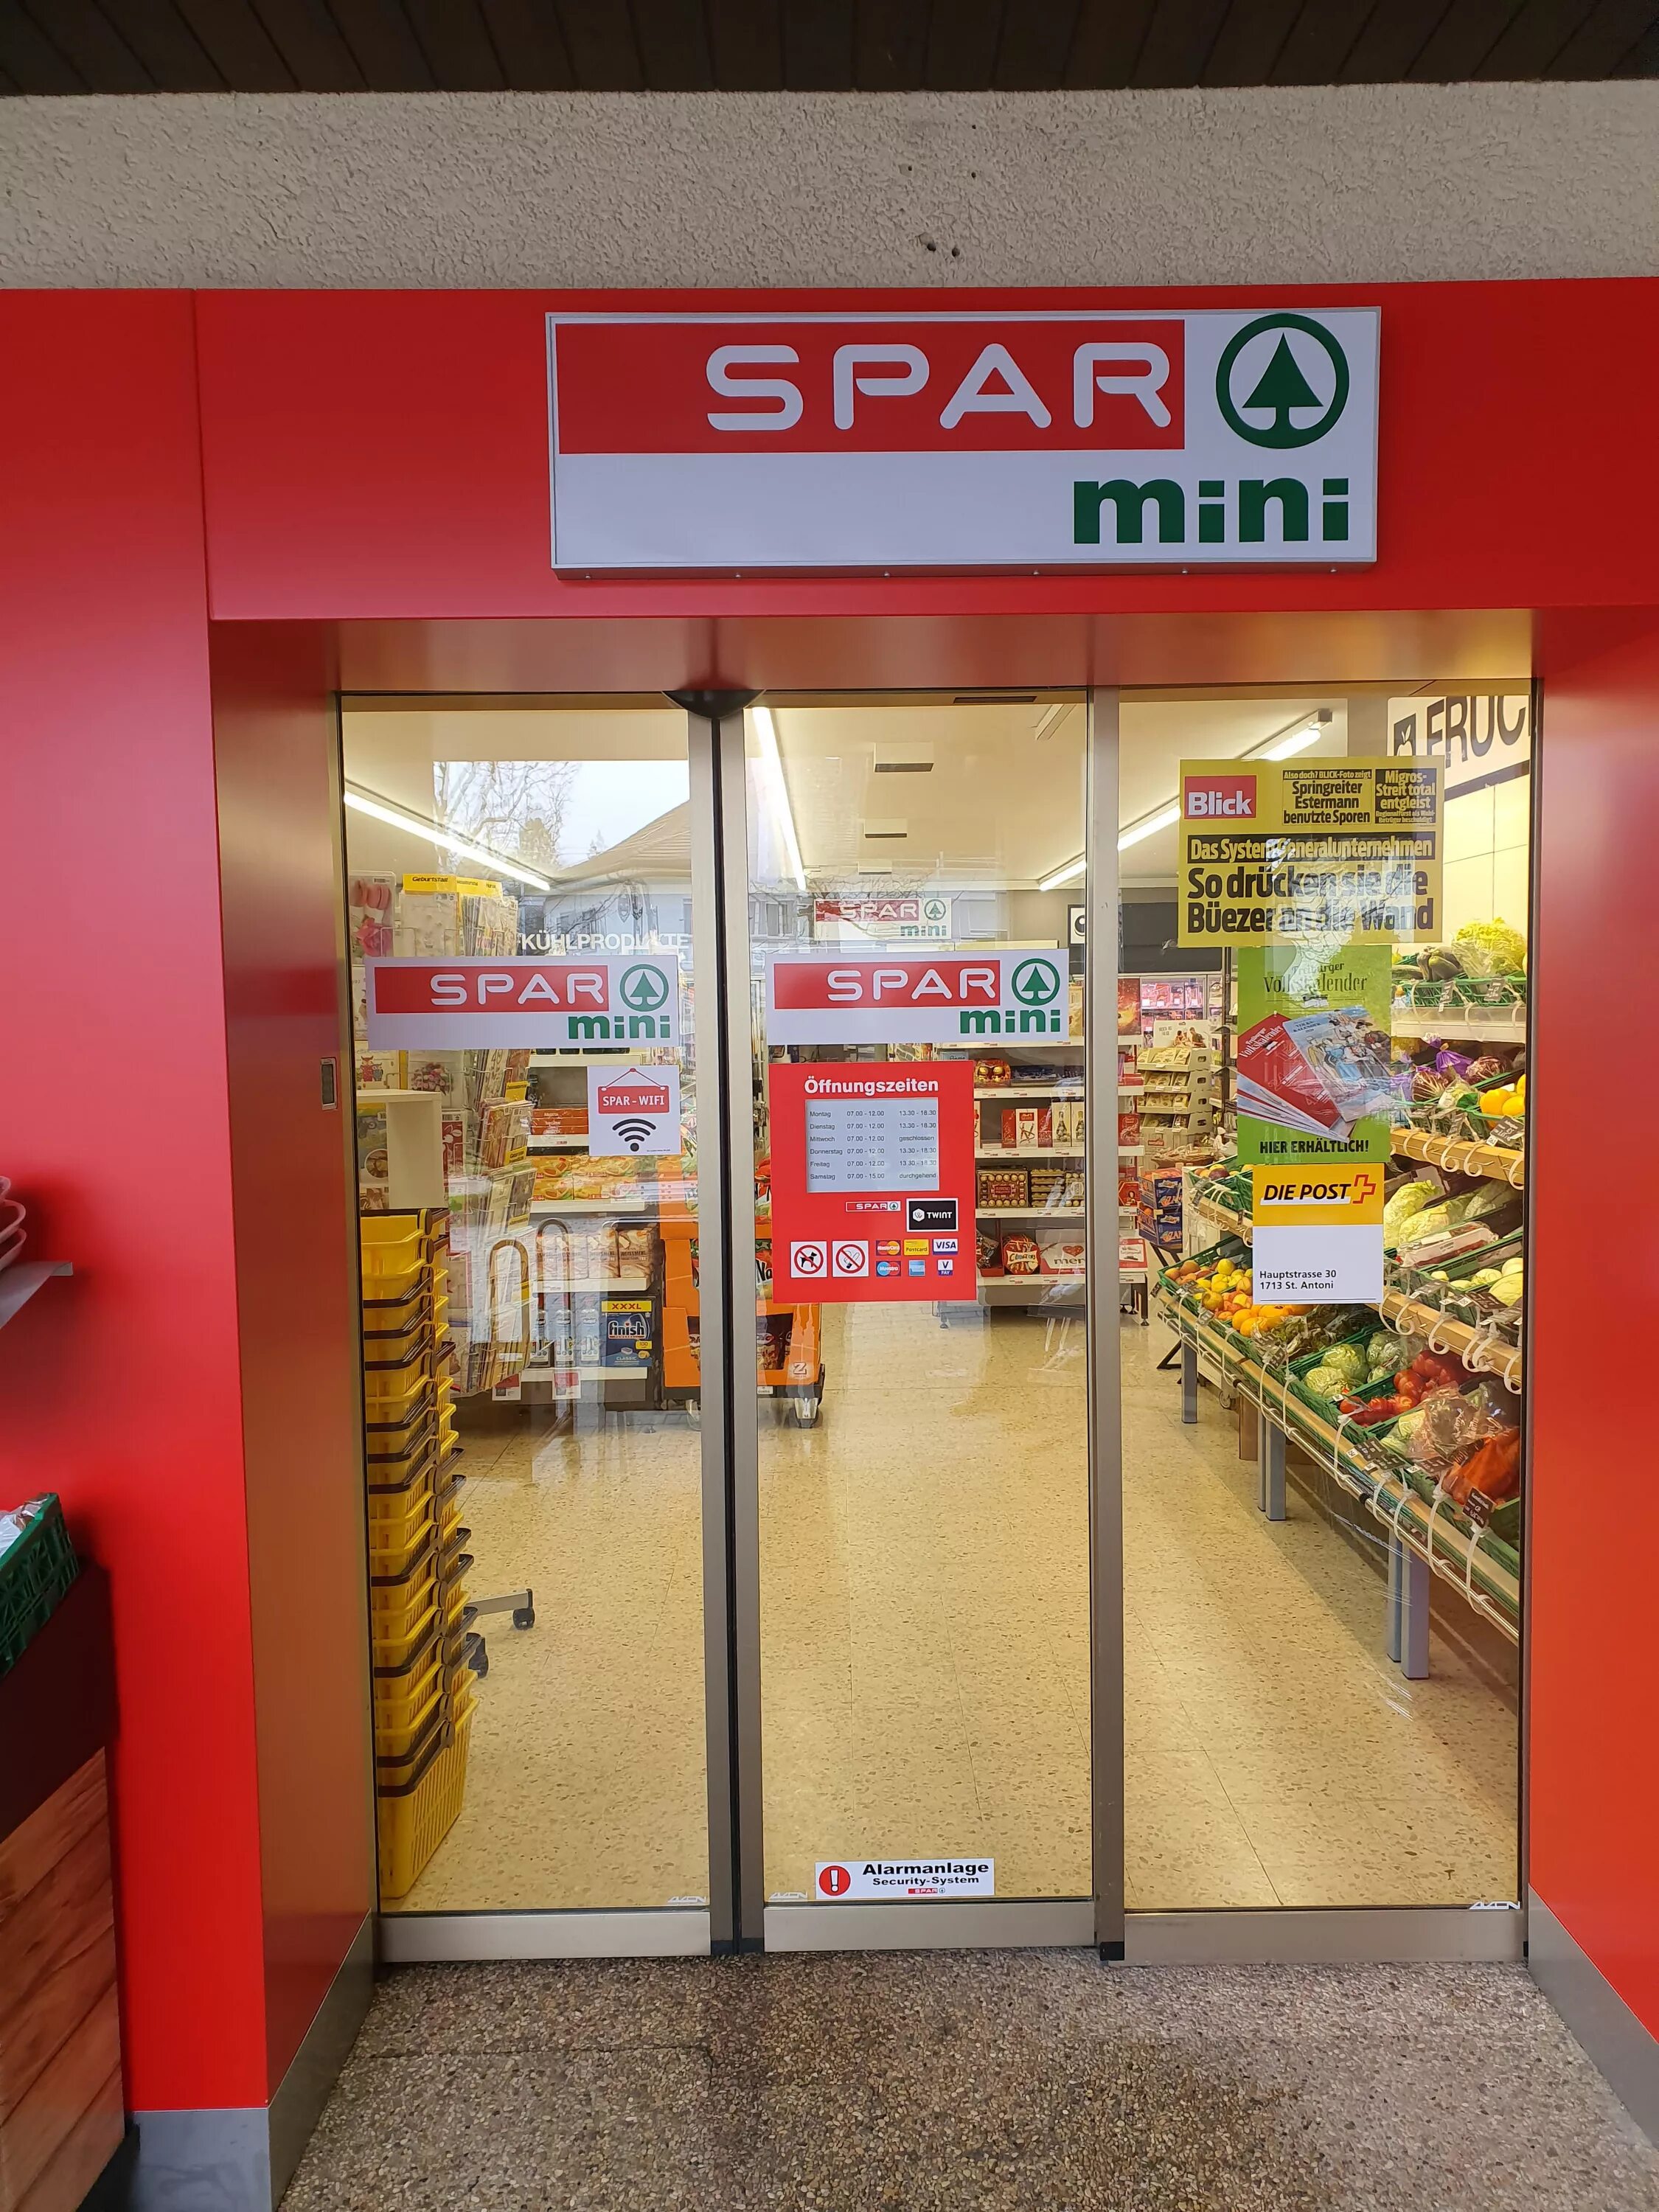 Спар еда. Магазины продуктов в Швейцарии. Магазин Спар продукты. Продукты в магазинах Швейцарии. Pasito Mini Спар.